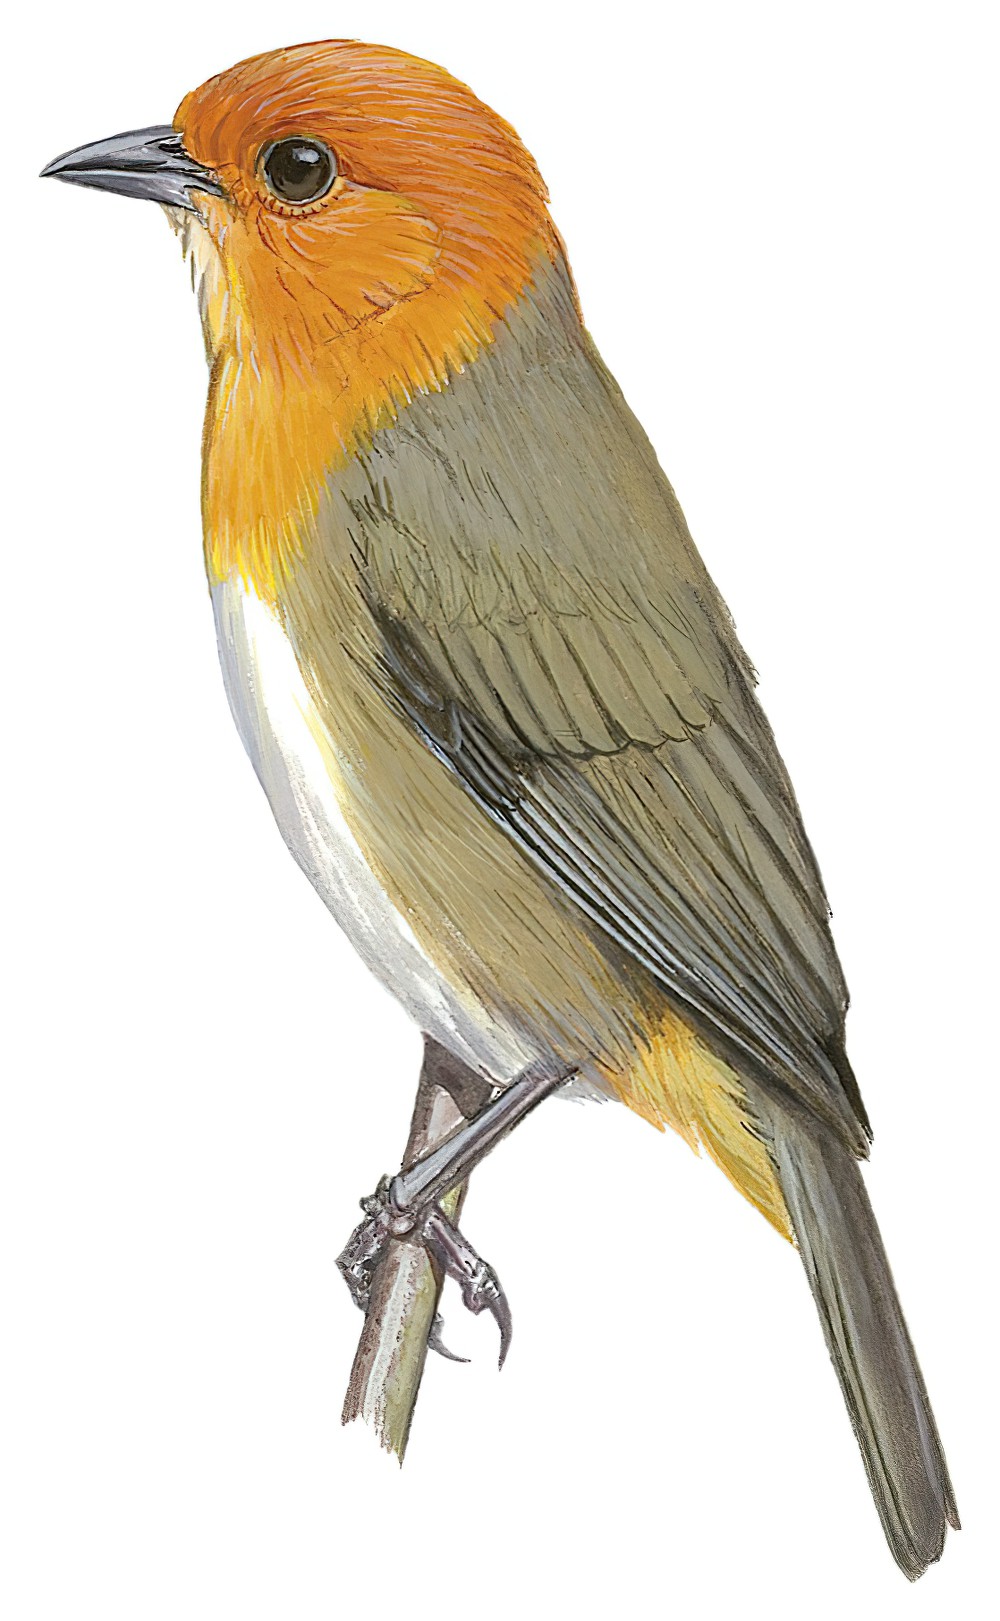 褐胁灰背雀 / Brown-flanked Tanager / Thlypopsis pectoralis